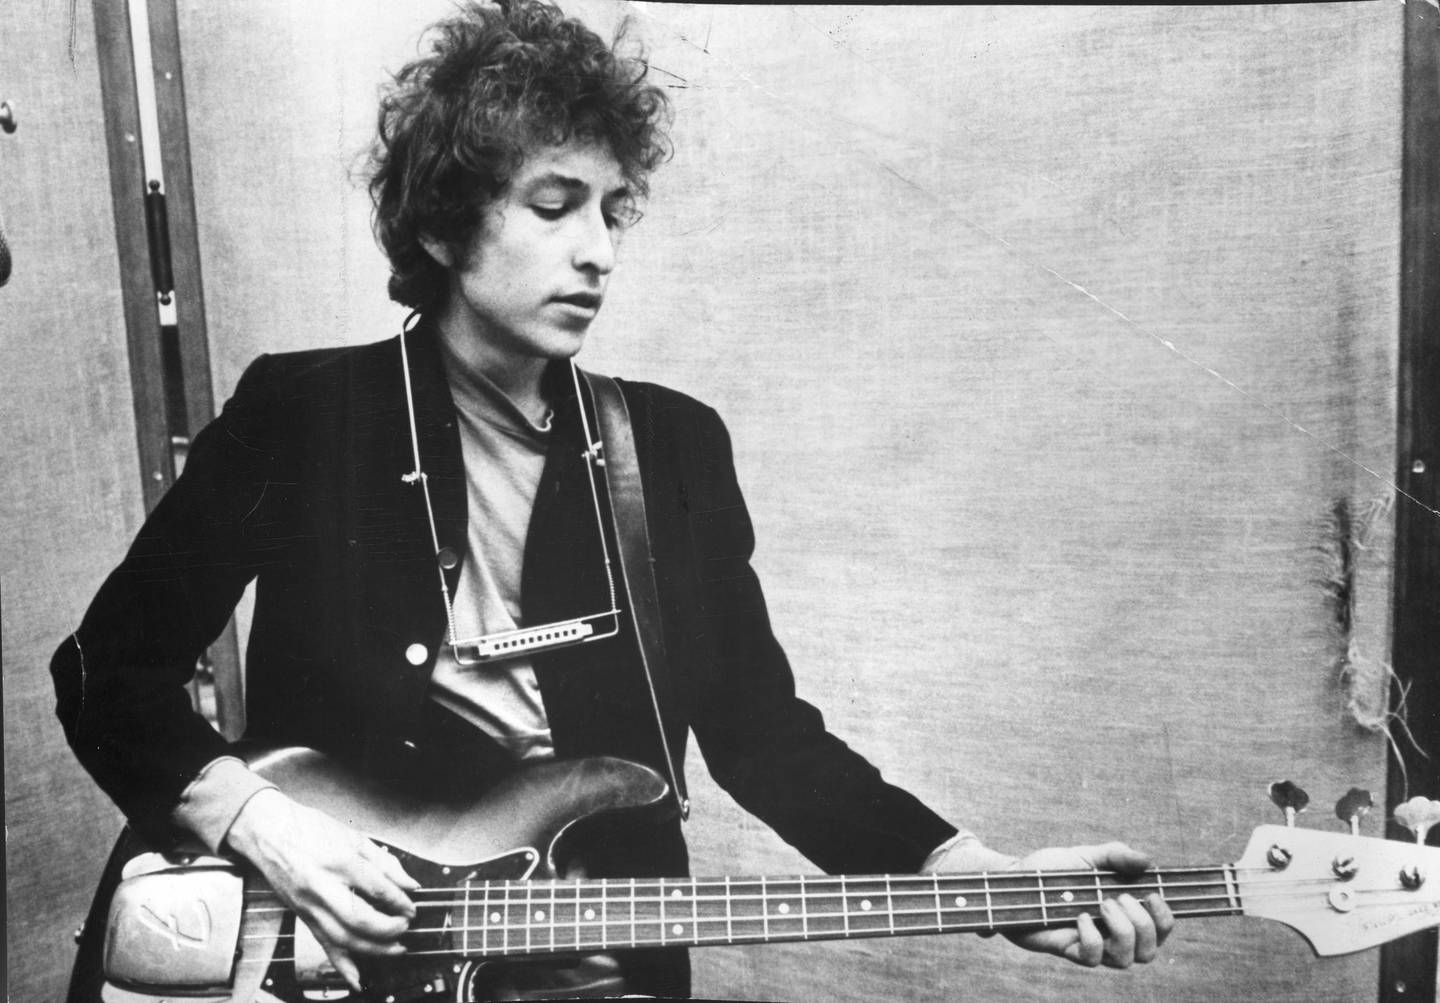 En ung Bob Dylan. – Han er ikke enkel å bli klok på, han overrasker hele tiden og har gjort så mye rart opp gjennom hele karrieren. Og fremdeles er han sjefen, sier Åge Aleksandersen, som blir med på bursdagsfeiringen i Oslo Konserthus.